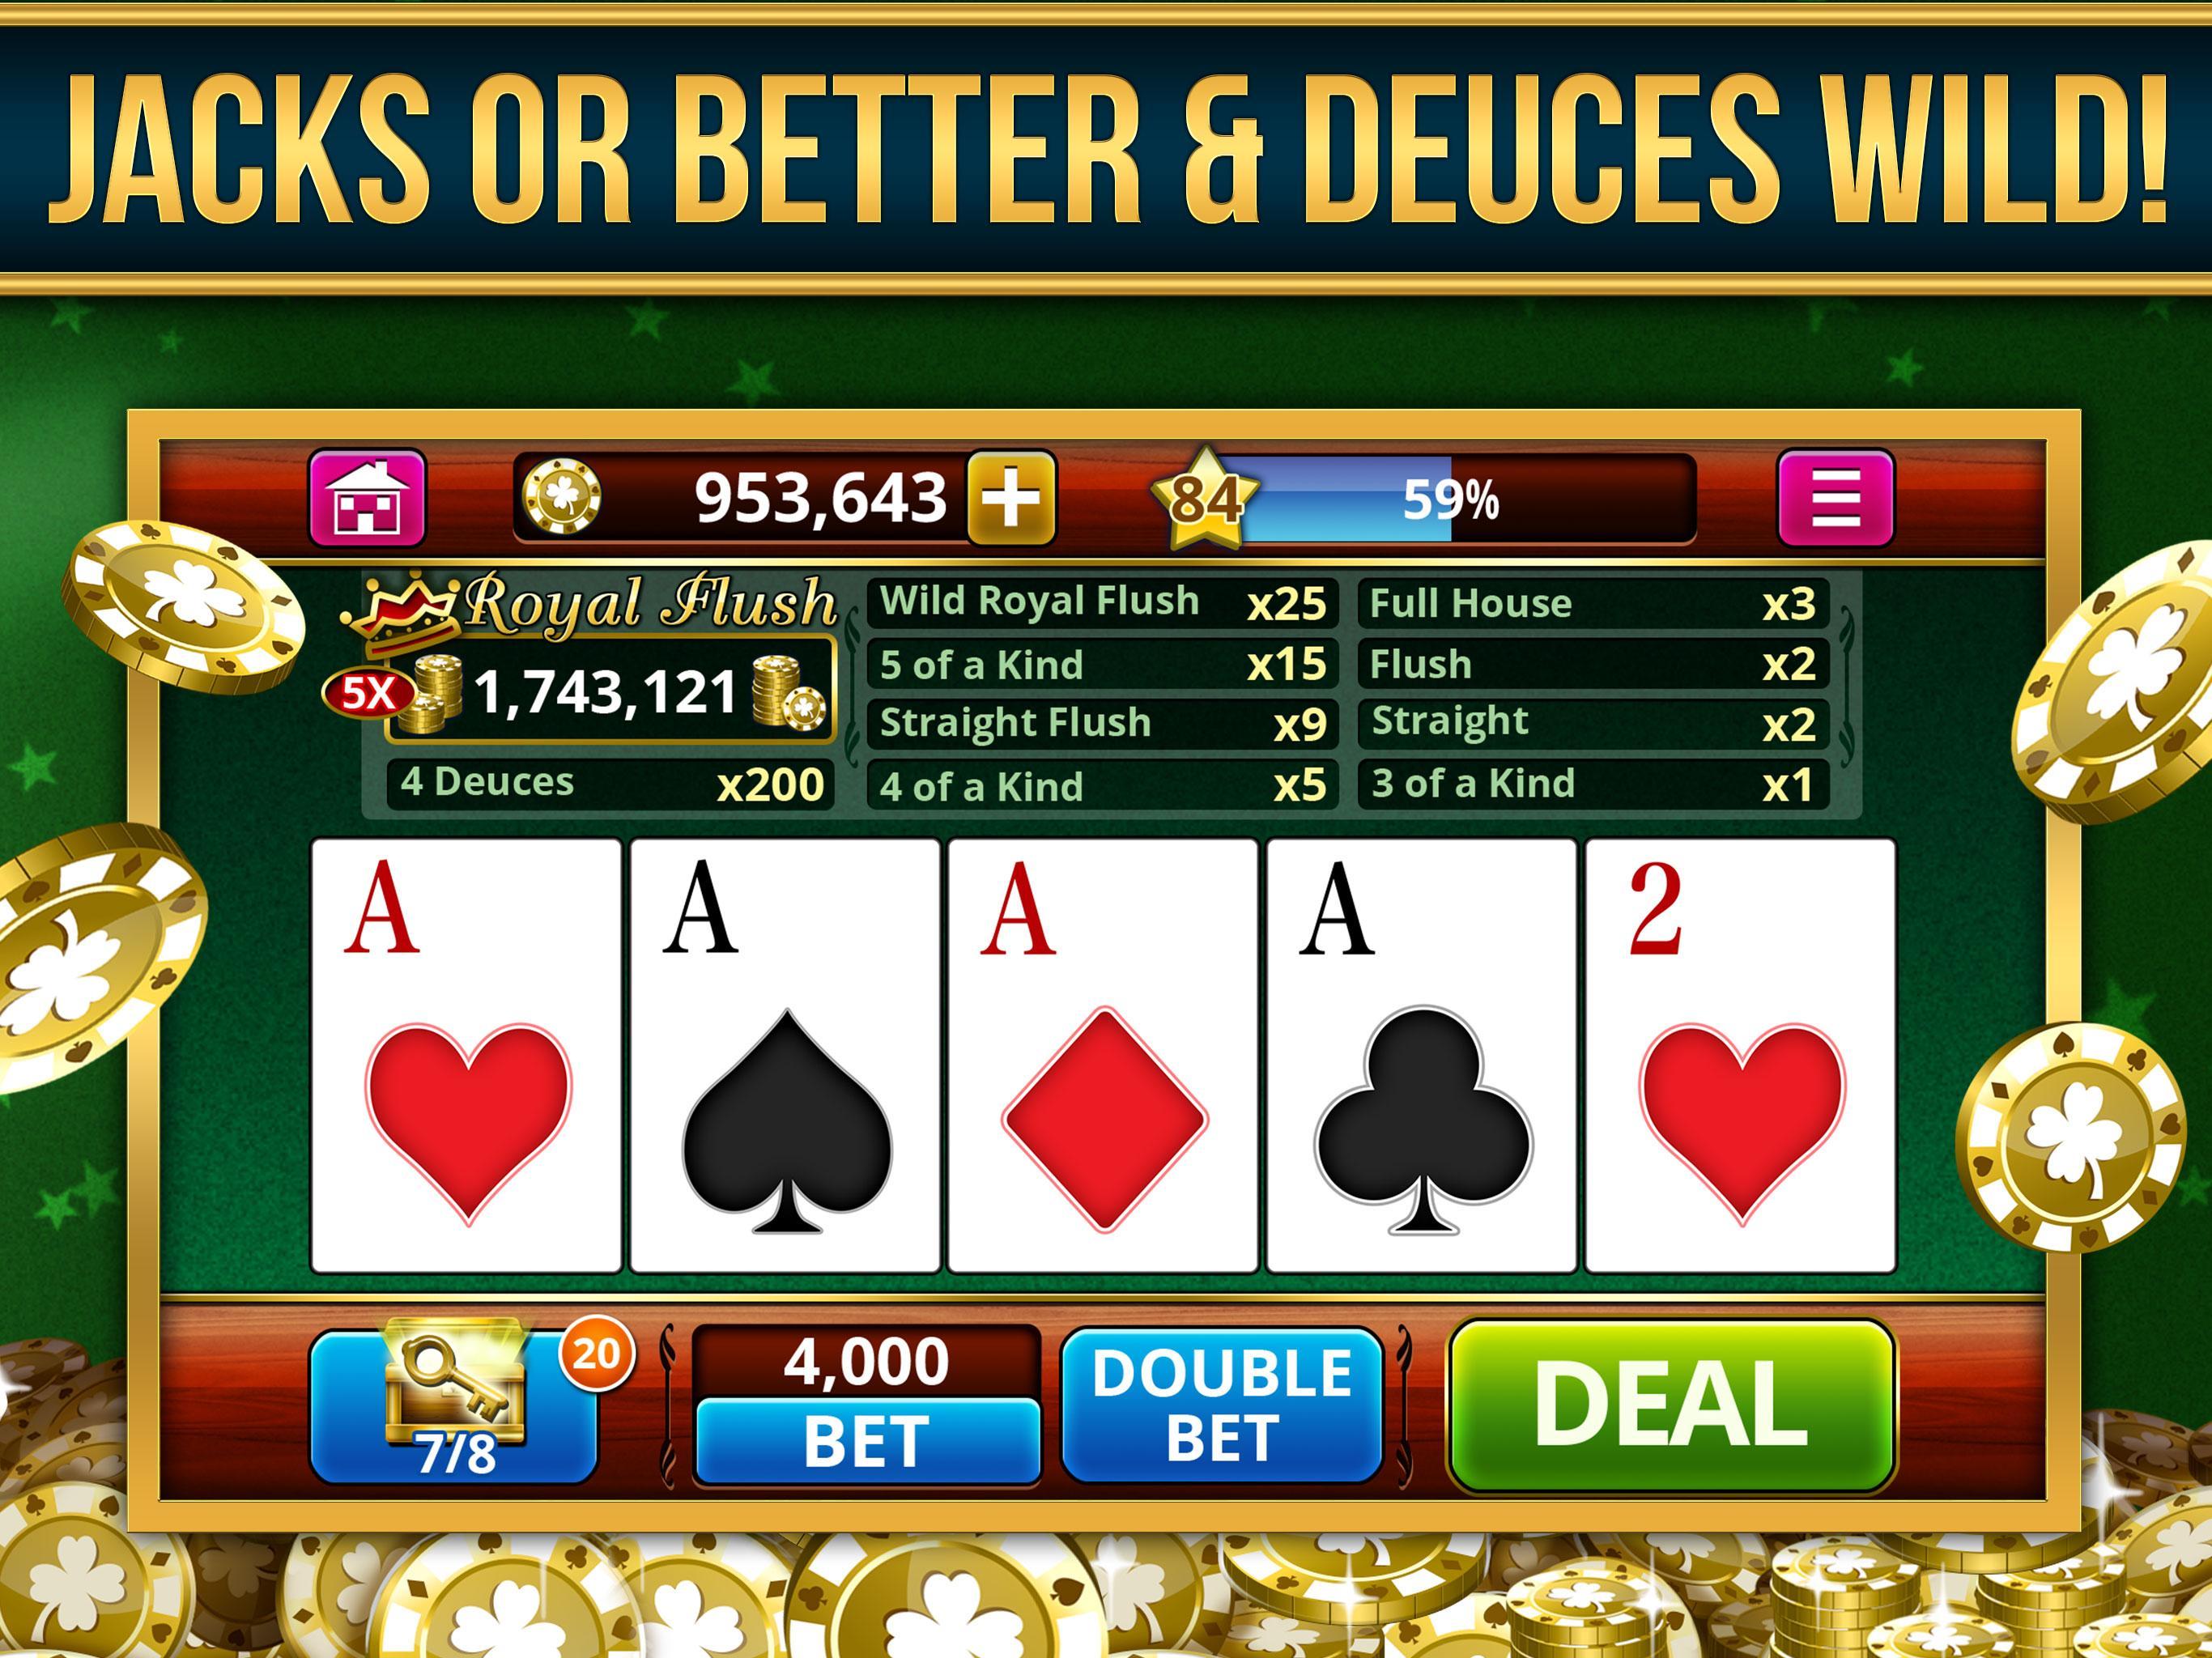 poker offline games casino apk game apkpure description app screenshot android